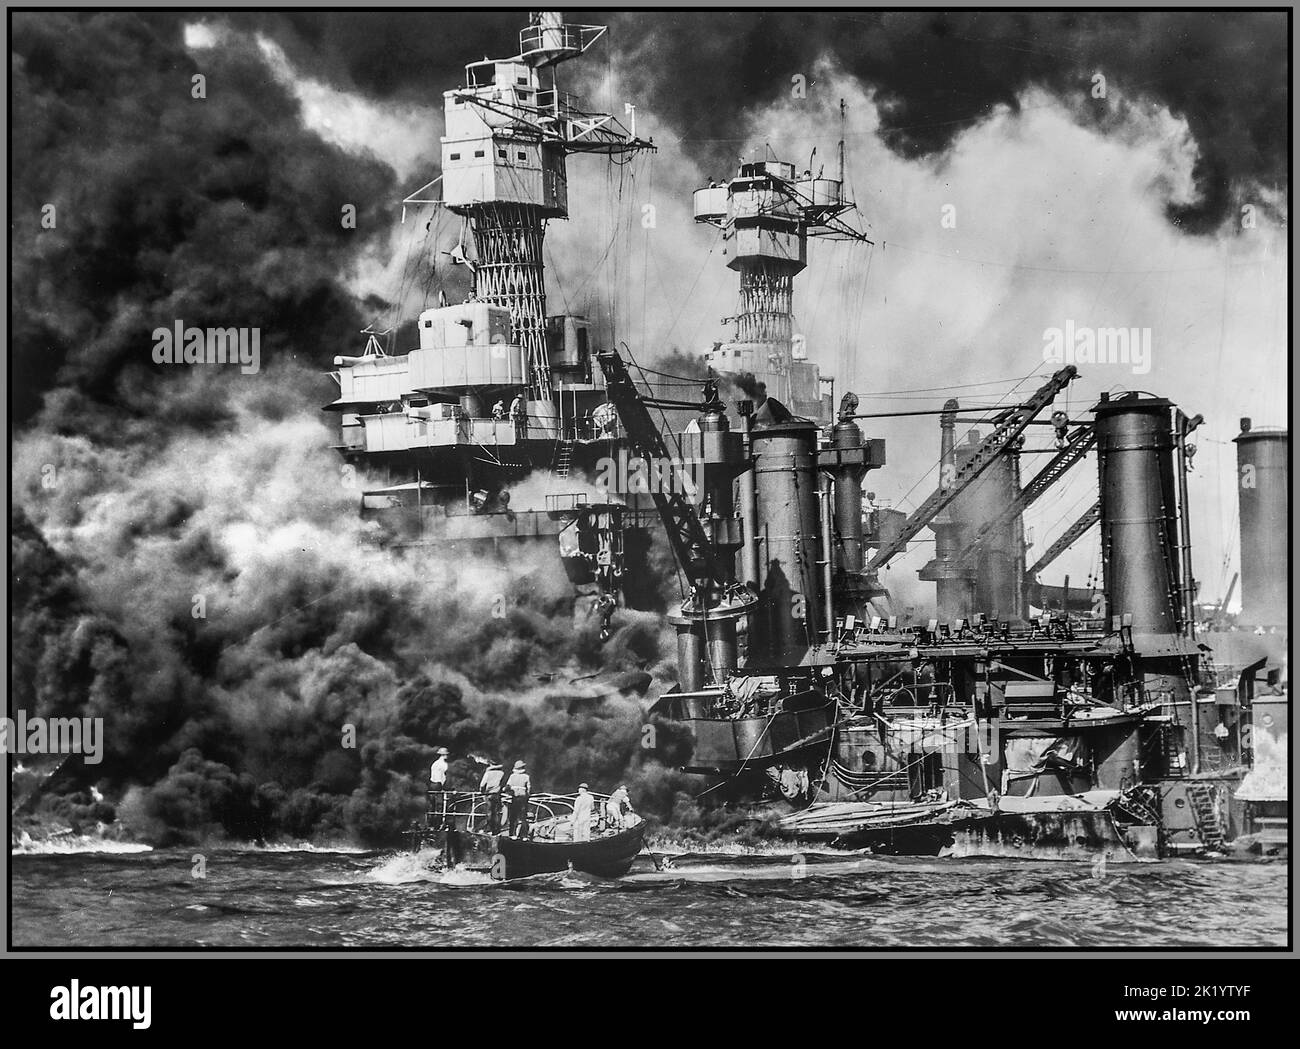 PEARL HARBOR ATAQUE JAPONÉS WW2 Pequeño barco rescatando a un marino en el agua del ardiendo USS West Virginia en Pearl Harbor Fecha 7 de diciembre de 1941 Foto de stock